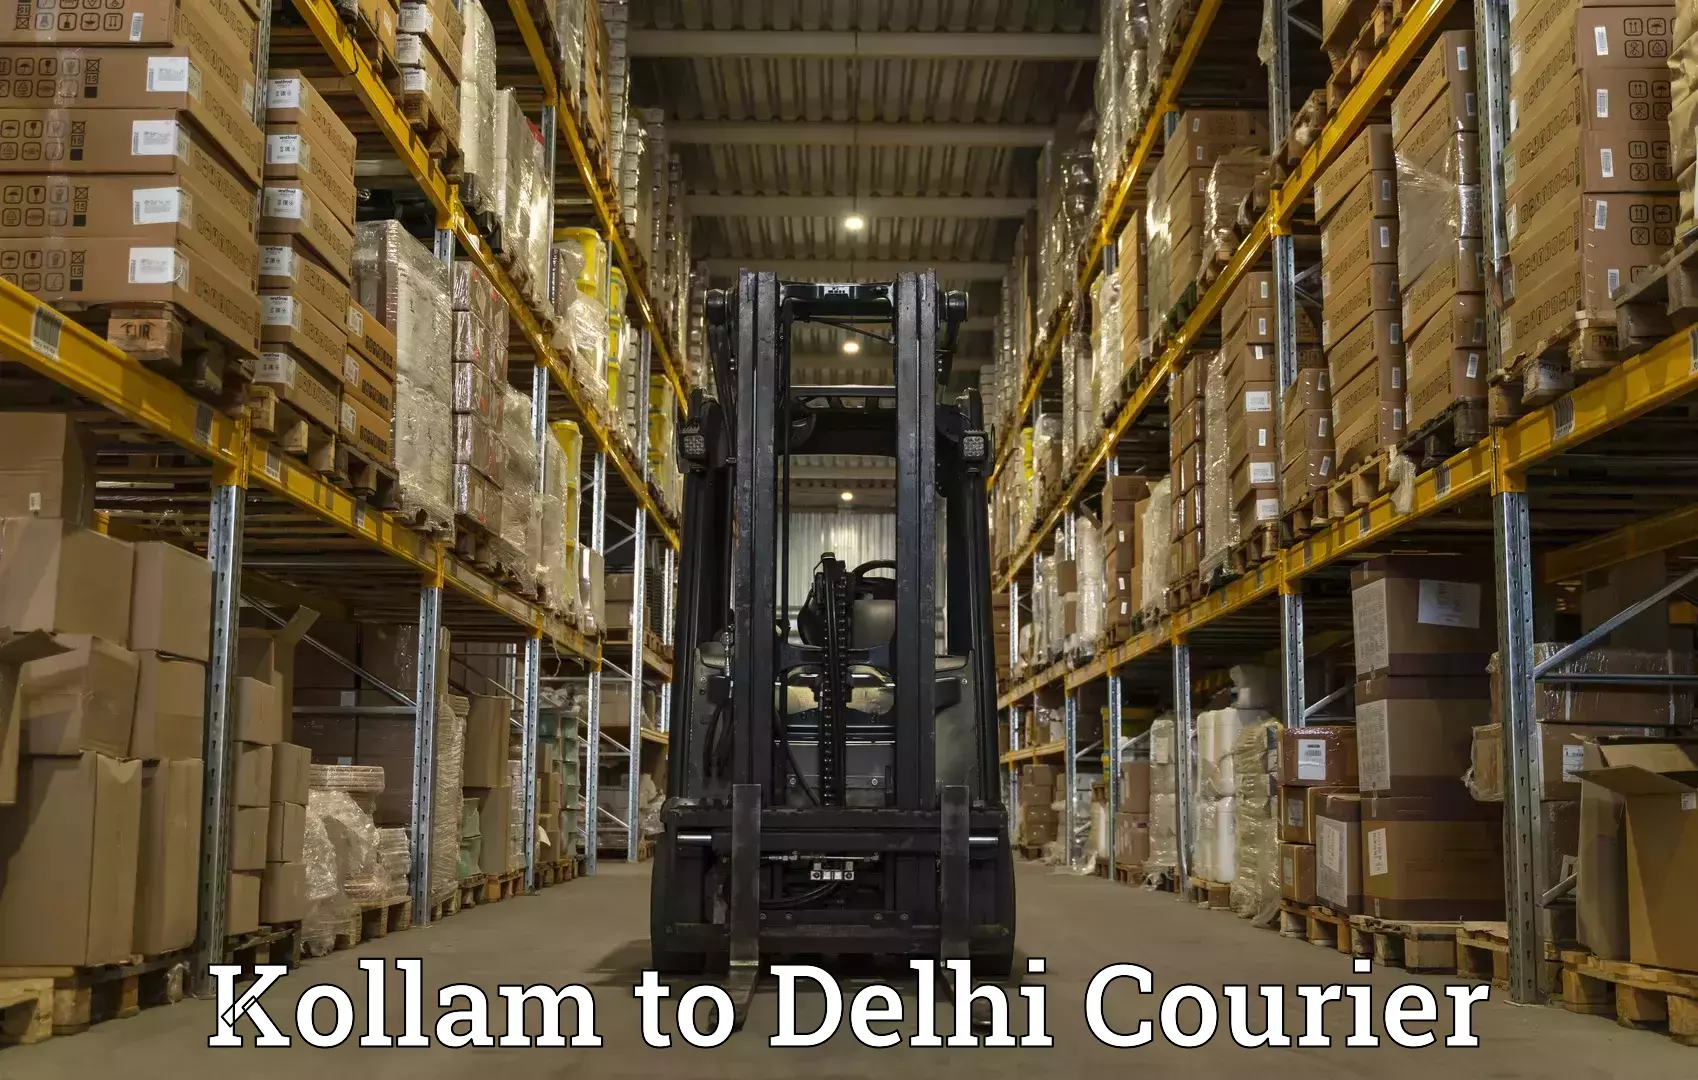 International parcel service Kollam to Delhi